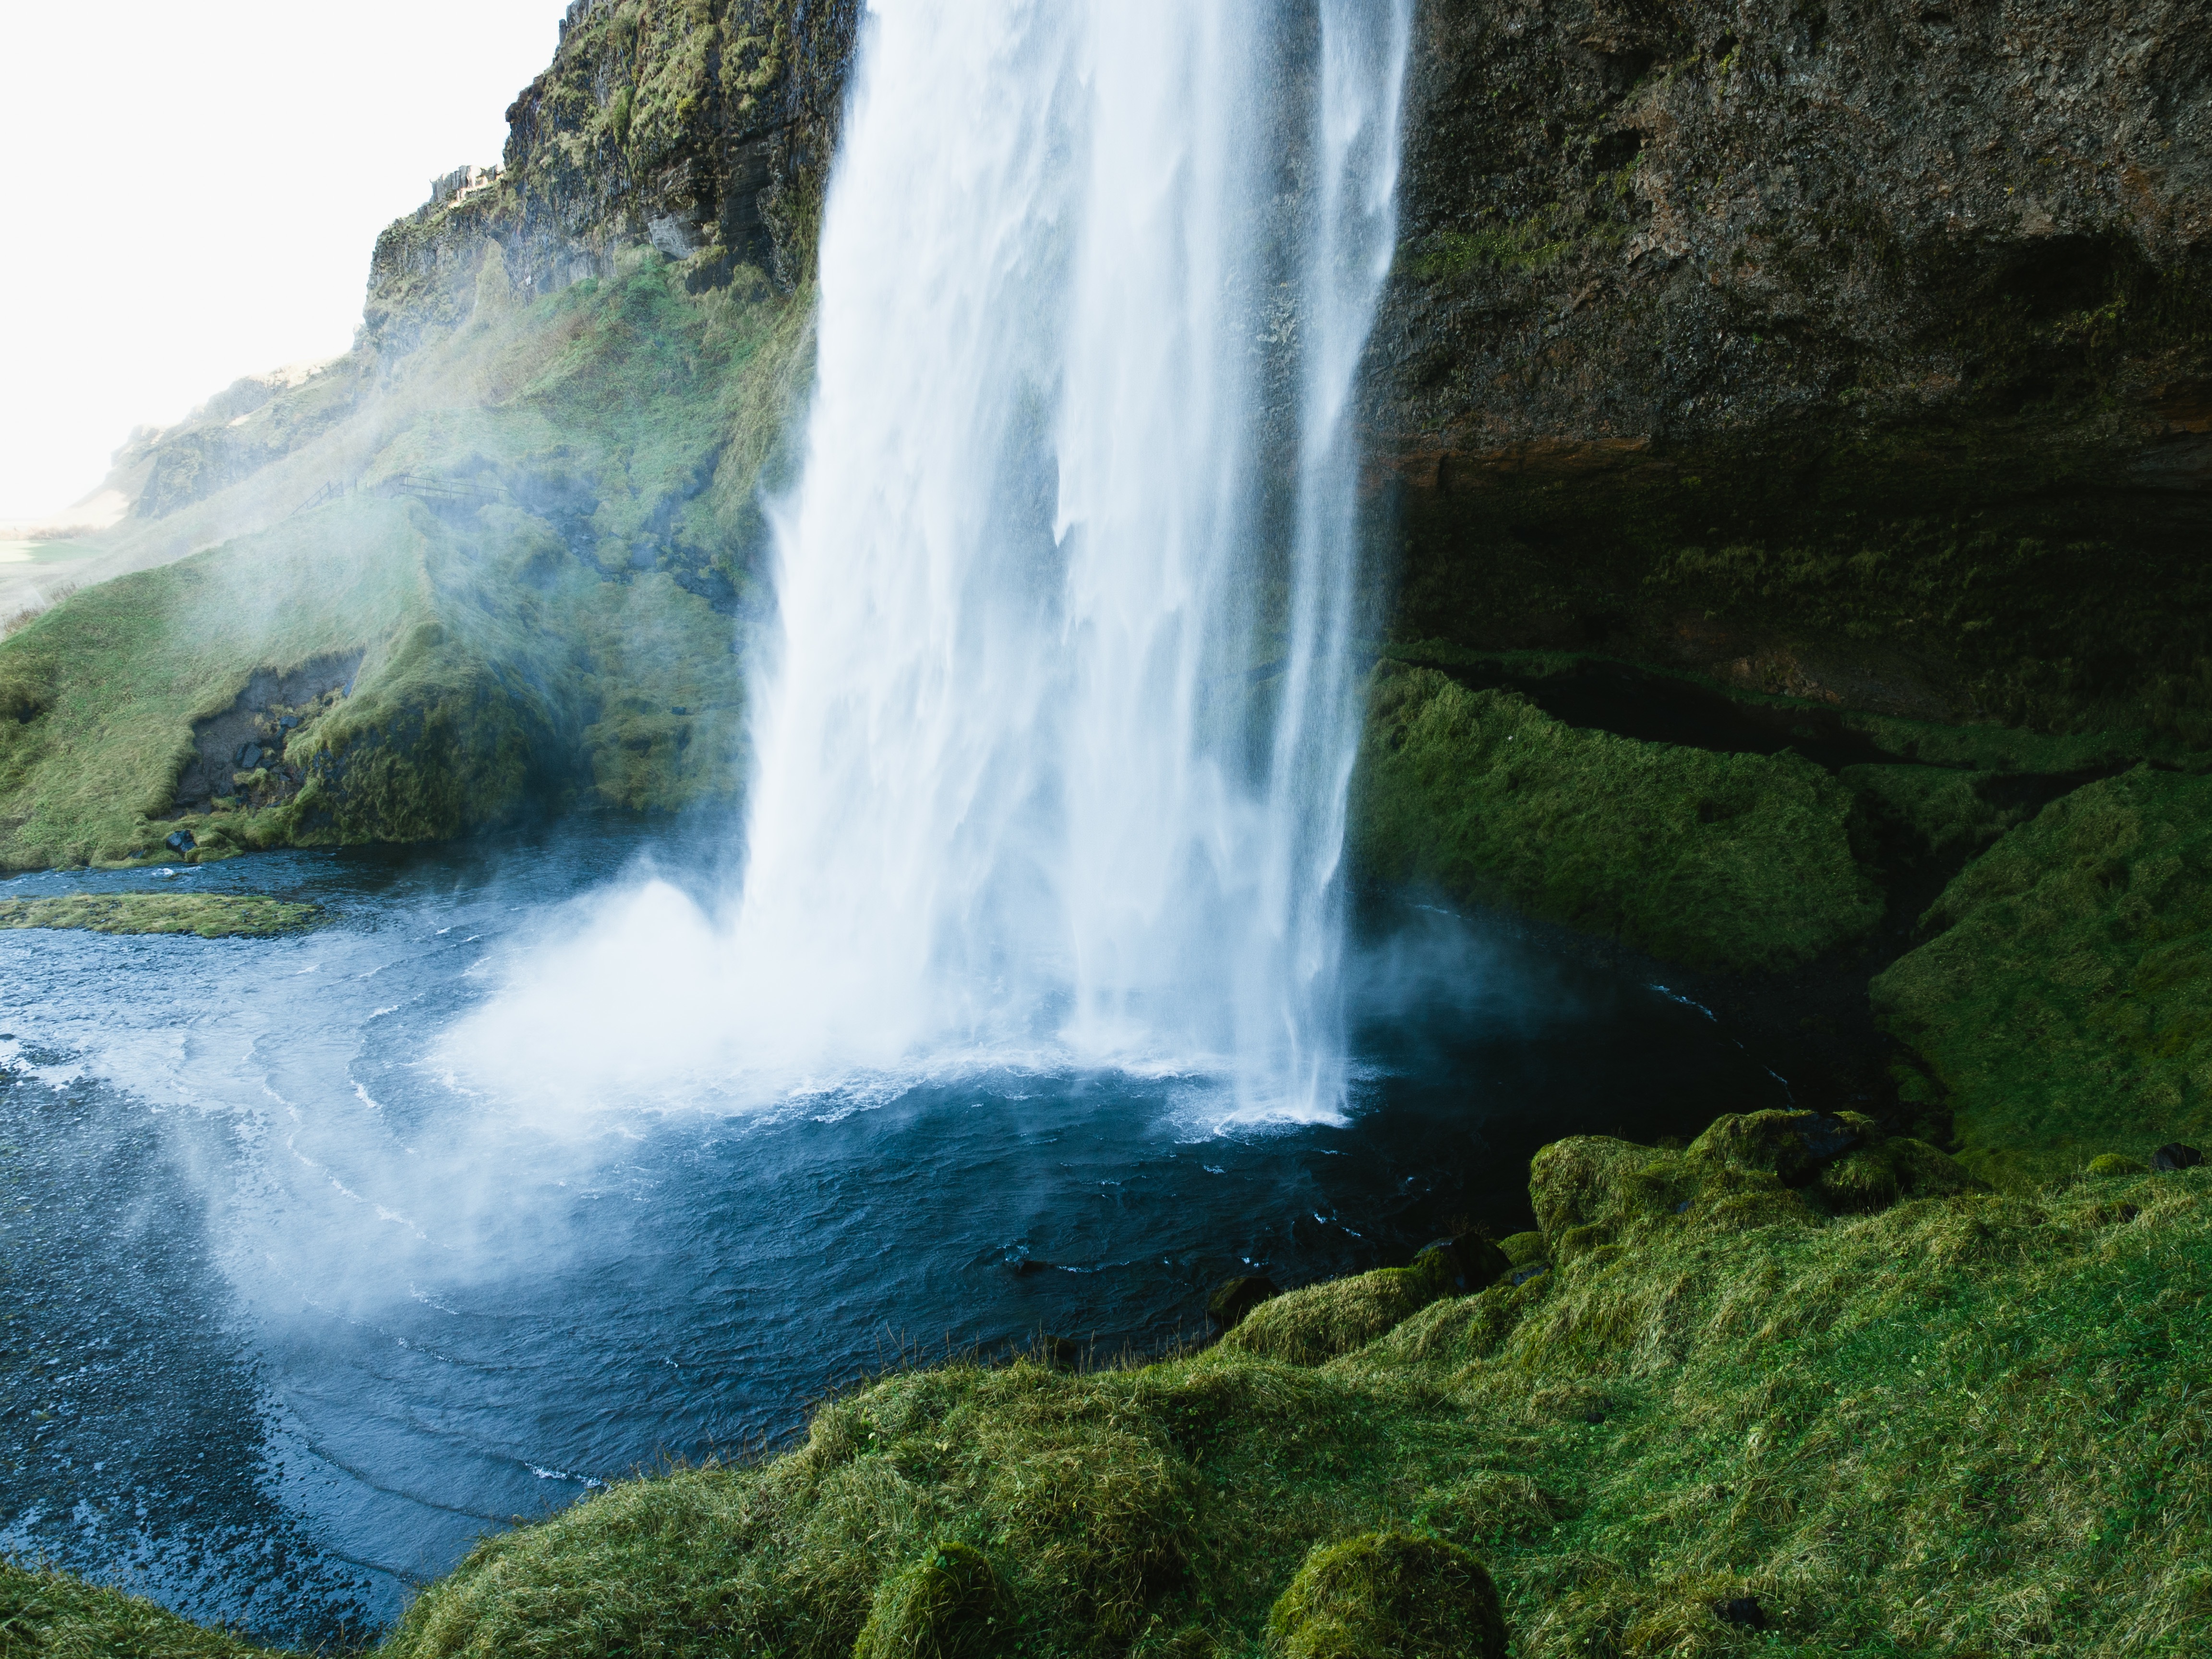 Waterfall in Iceland by Jeff Sheldon